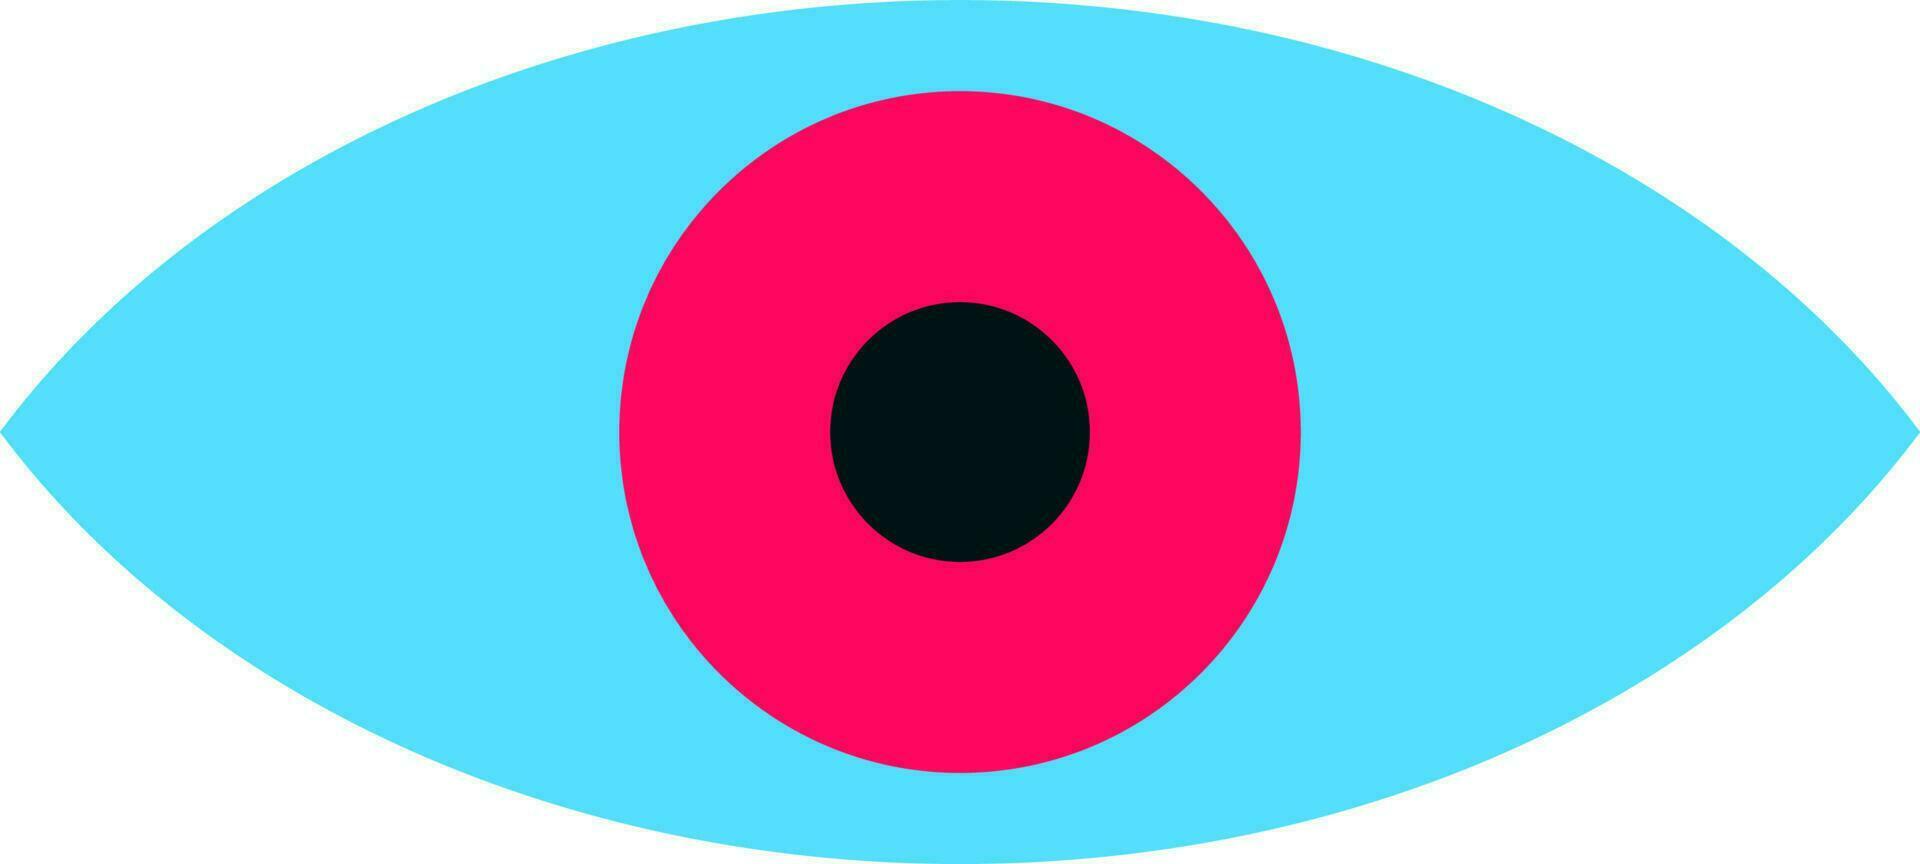 aislado ojo lente en azul y rosado color. vector